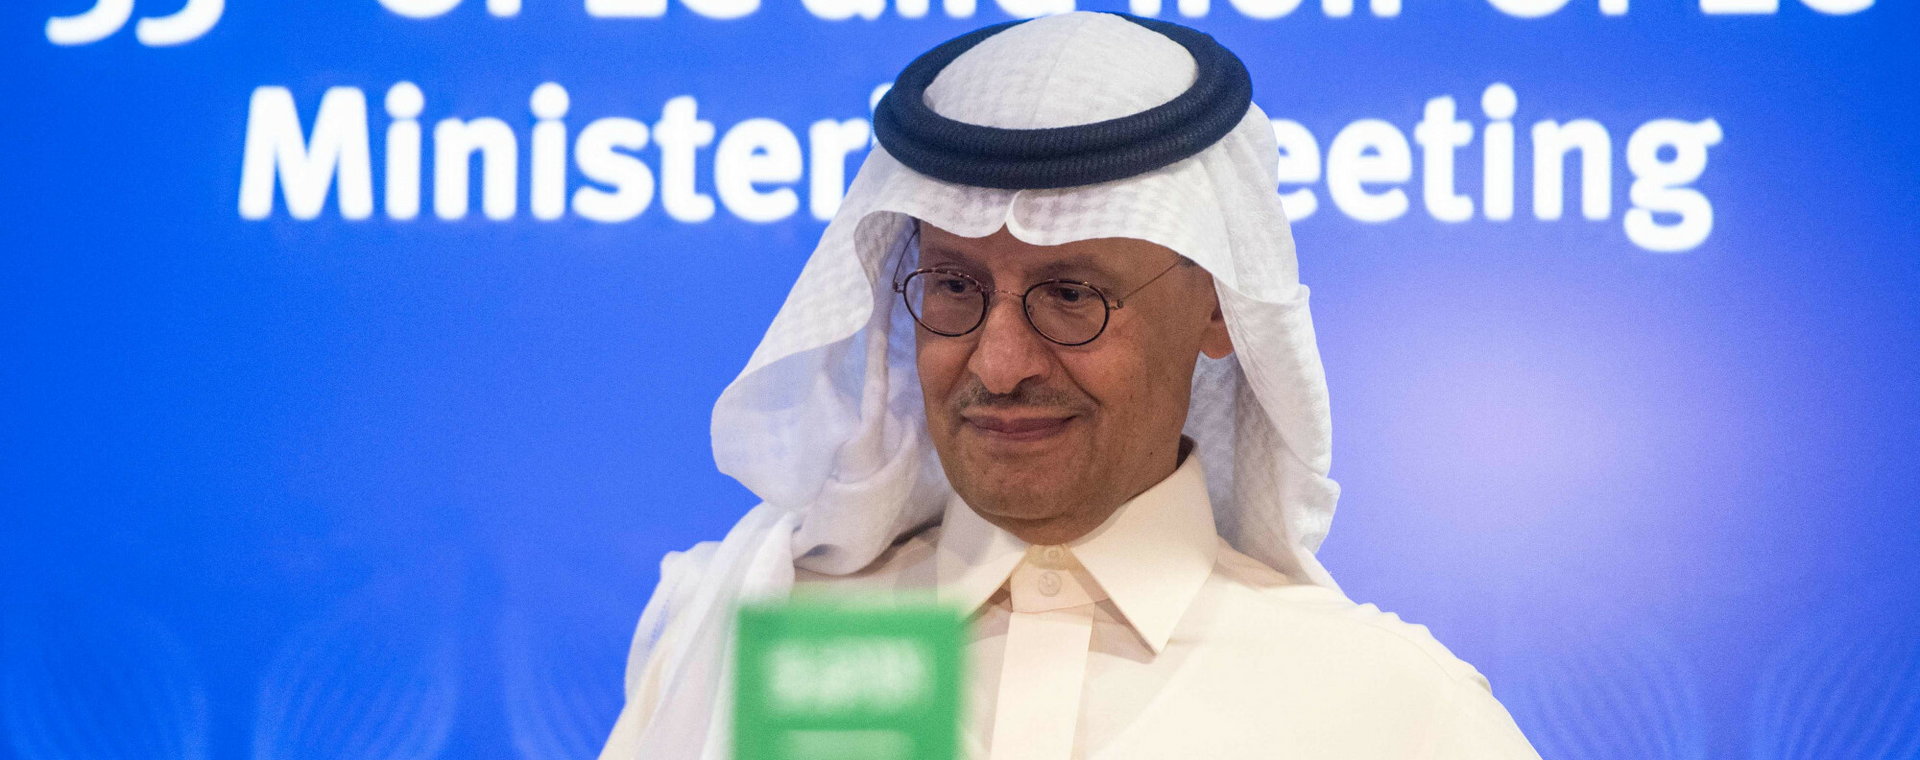 Abdulaziz bin Salman, saudyjski minister do spraw energii